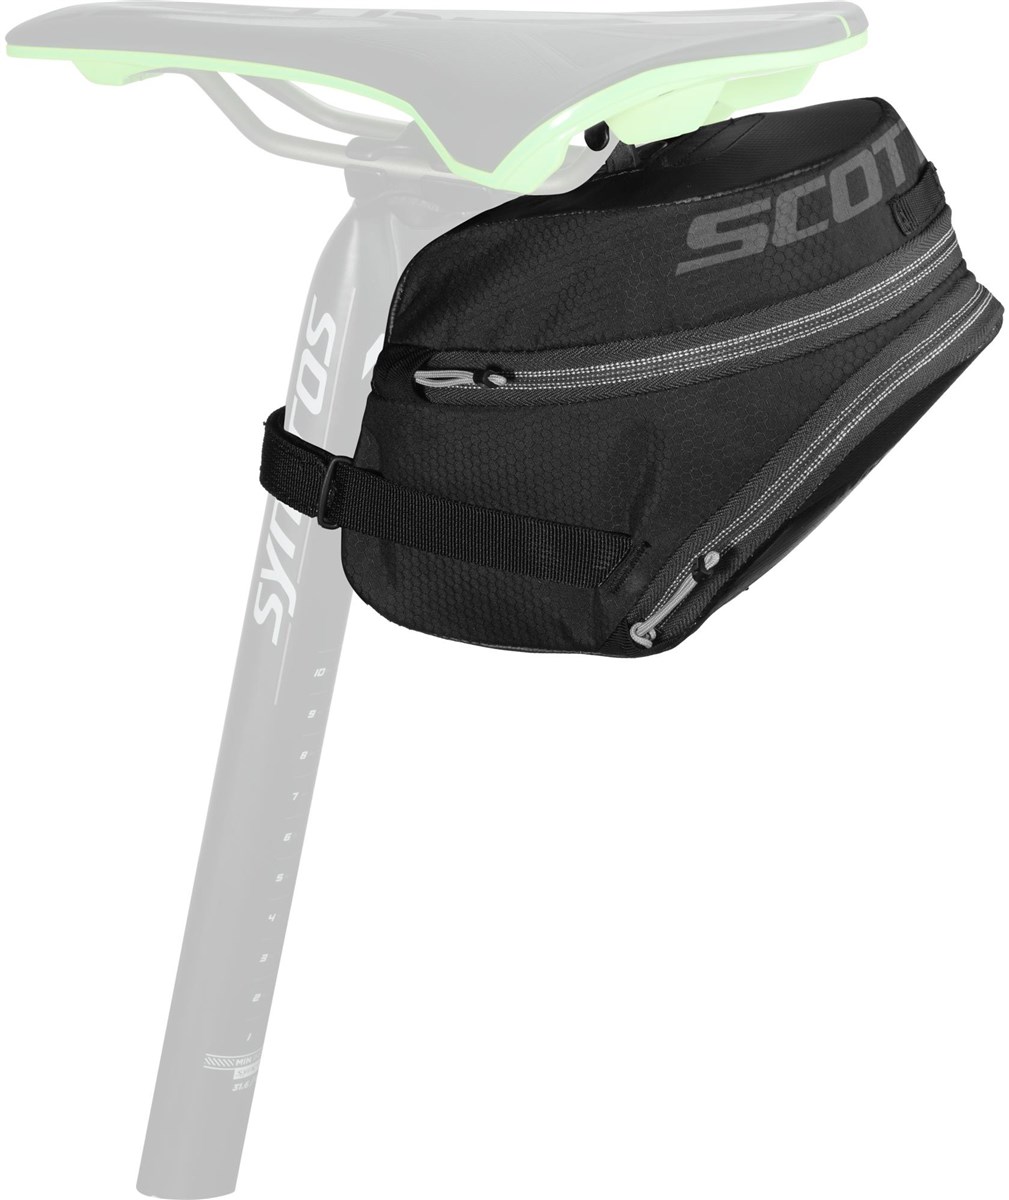 Scott Hilite 900 Saddle Bag product image